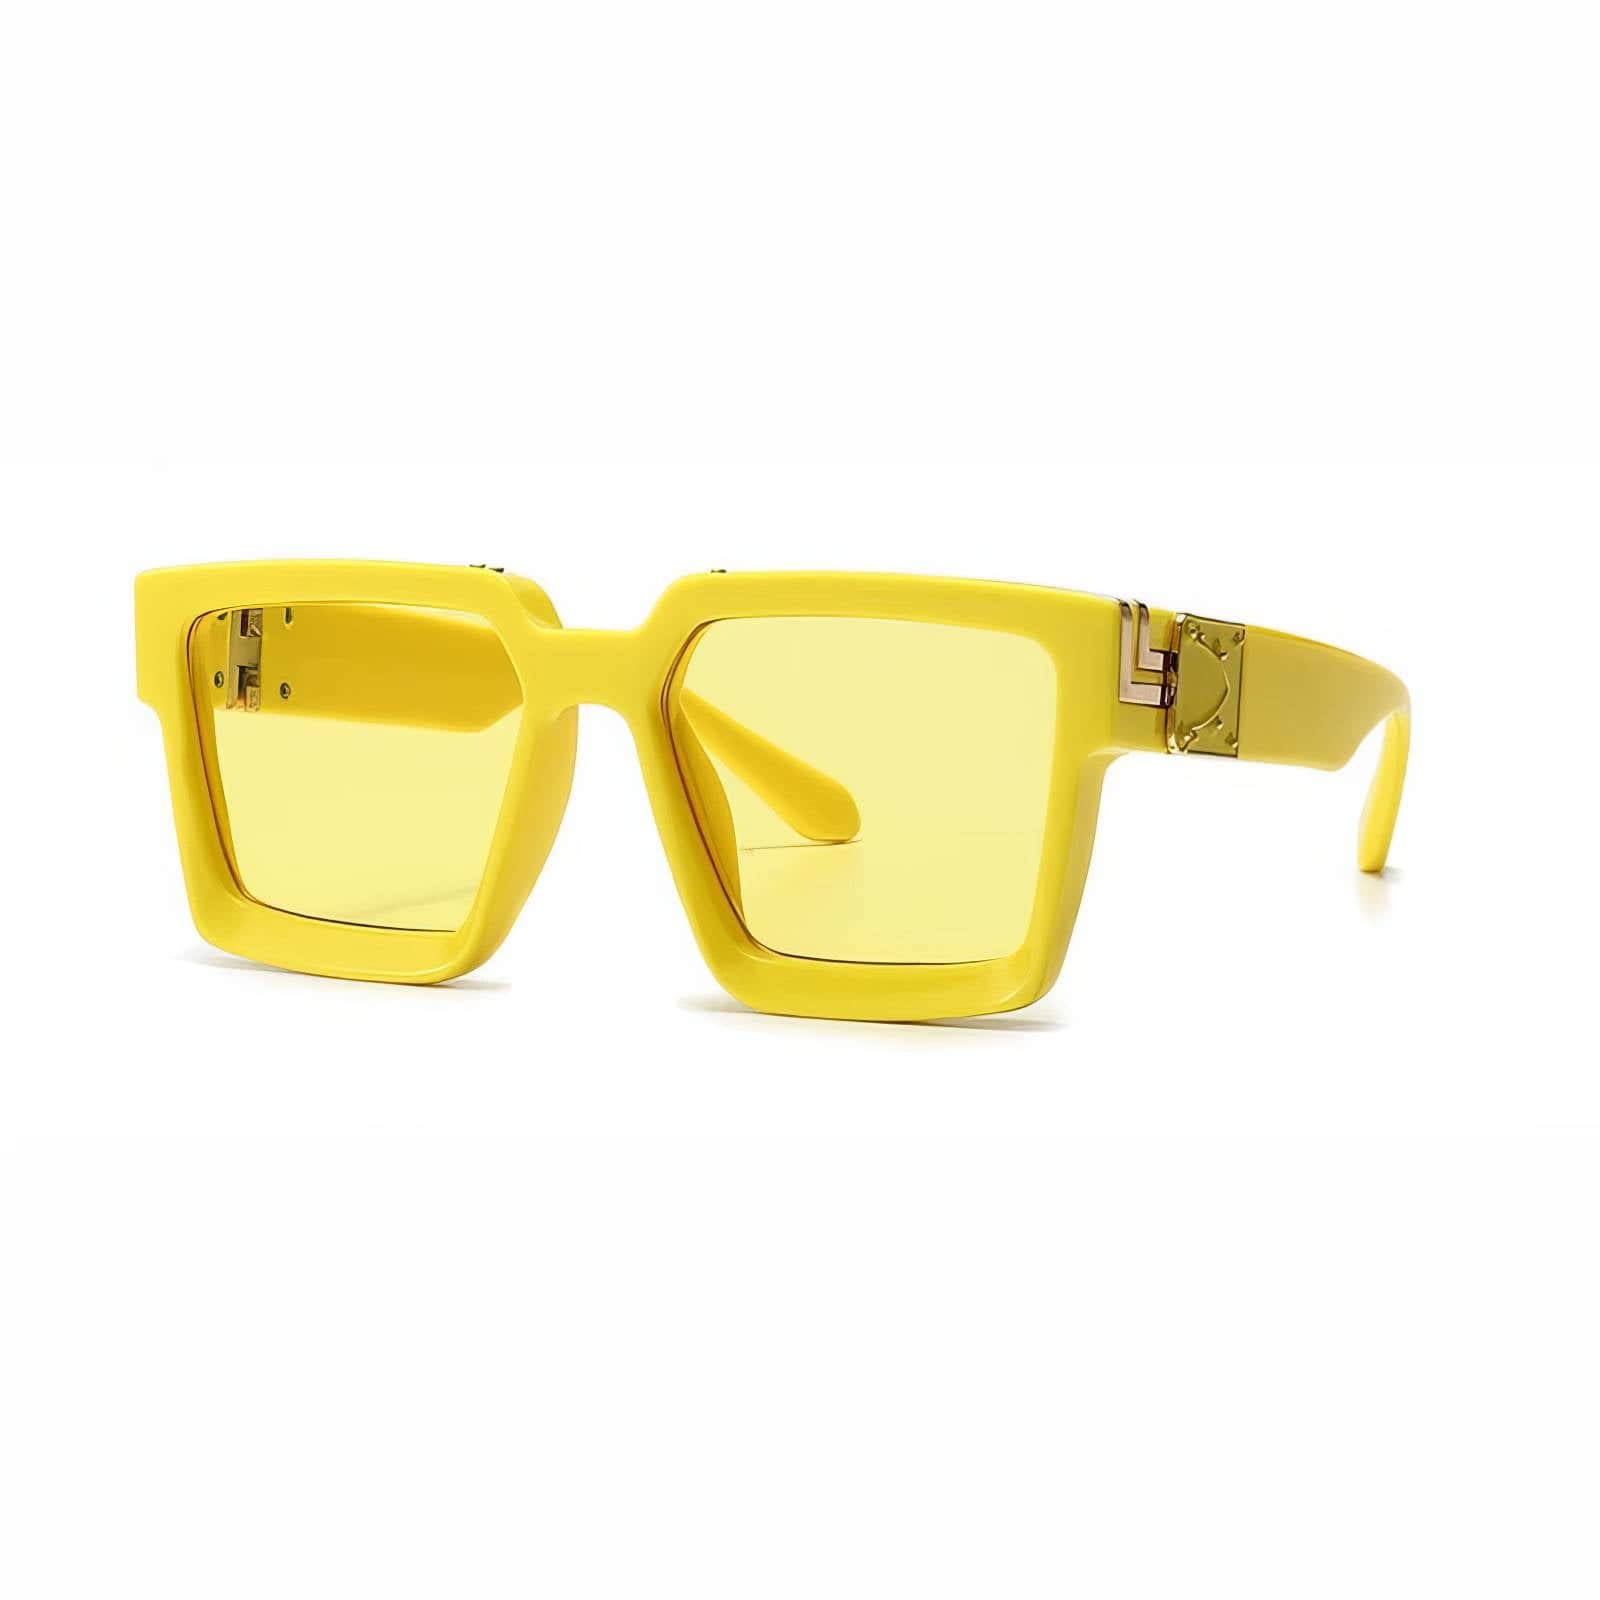 Big Frame Square Eyewear Yellow/Yellow / Resin